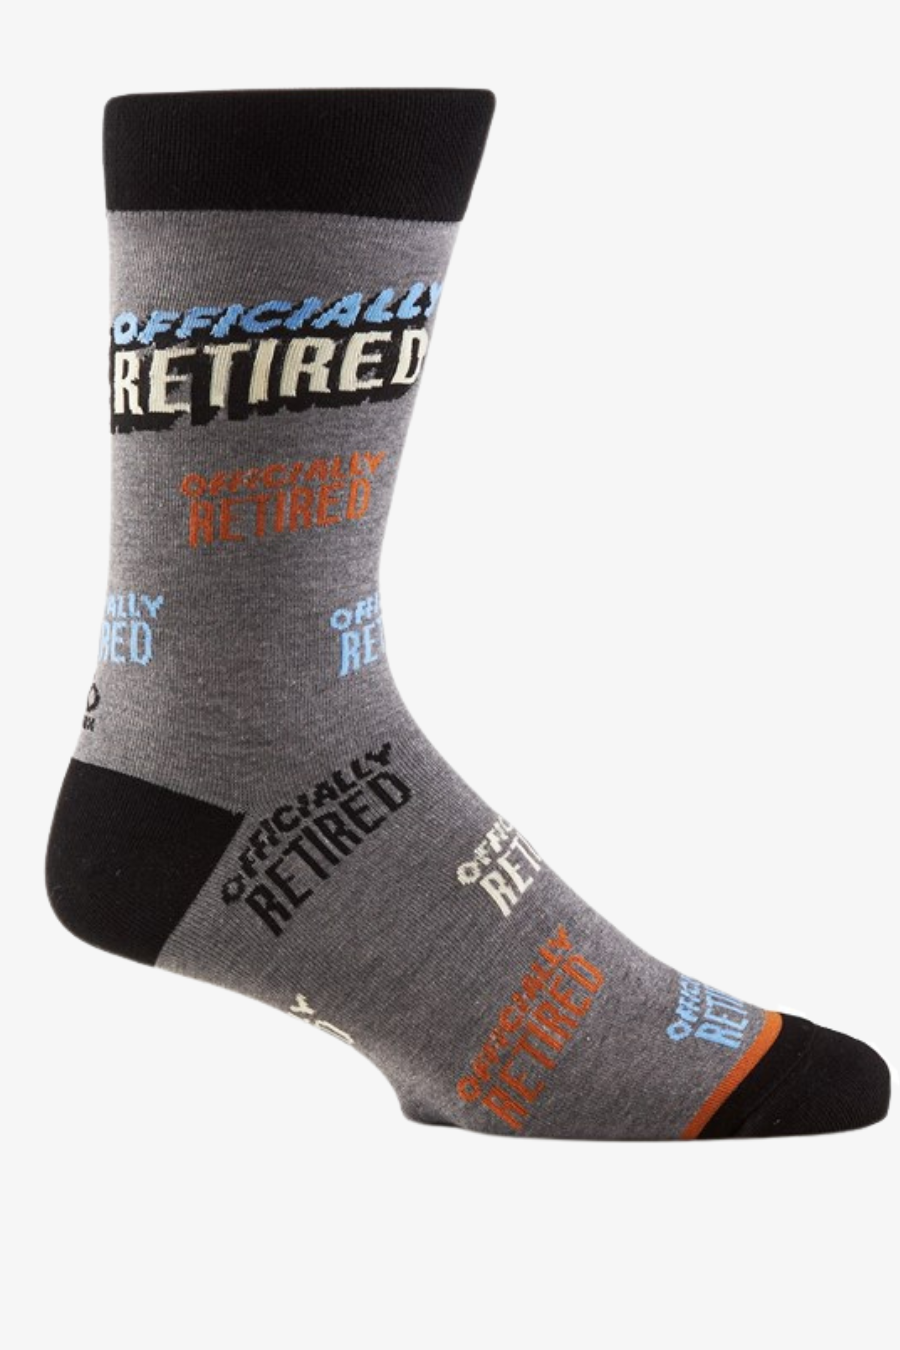 Men's Pro Retired Crew Sock